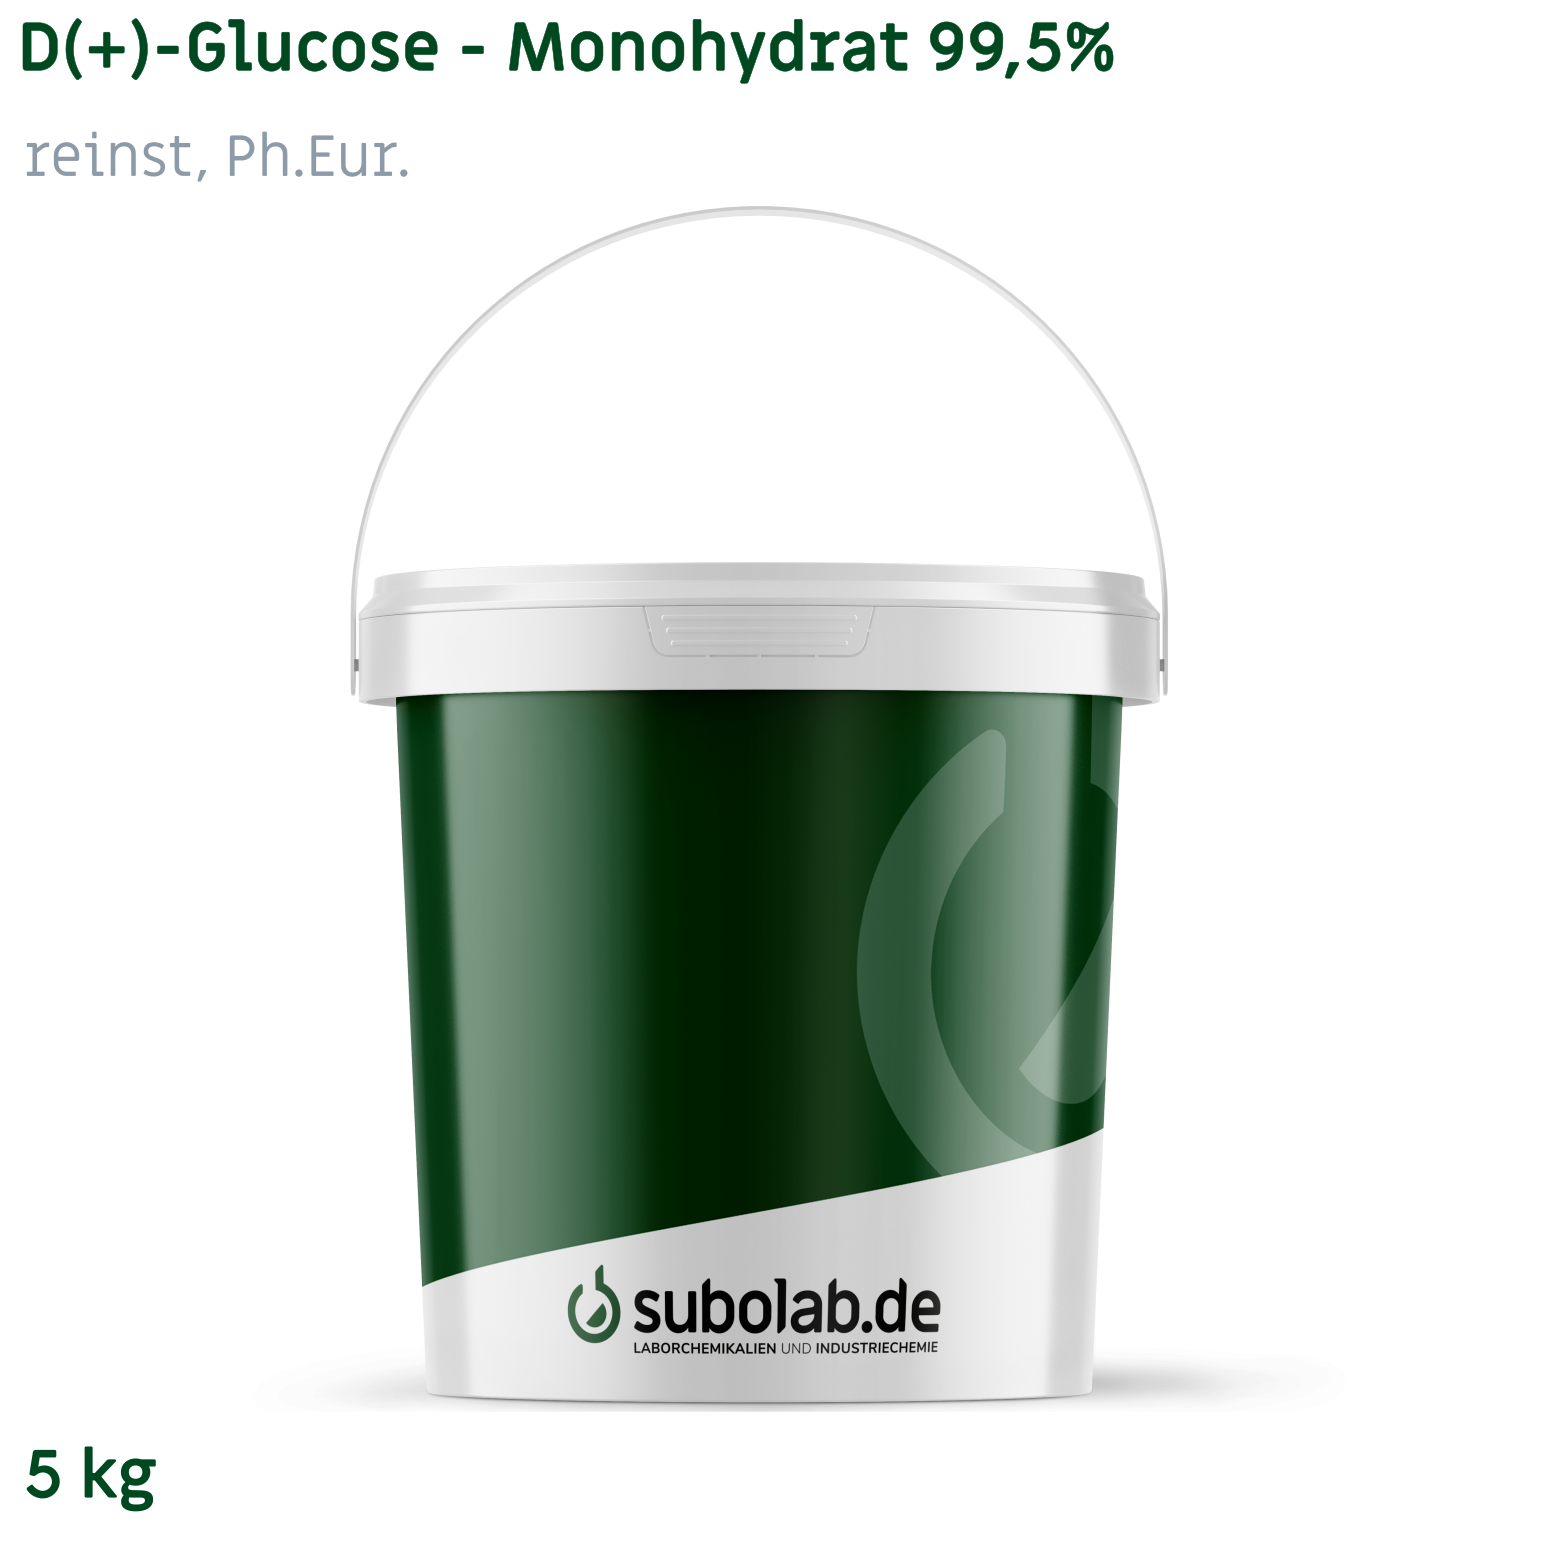 Bild von D(+)-Glucose - Monohydrat 99,5% reinst, Ph.Eur. (5 kg)